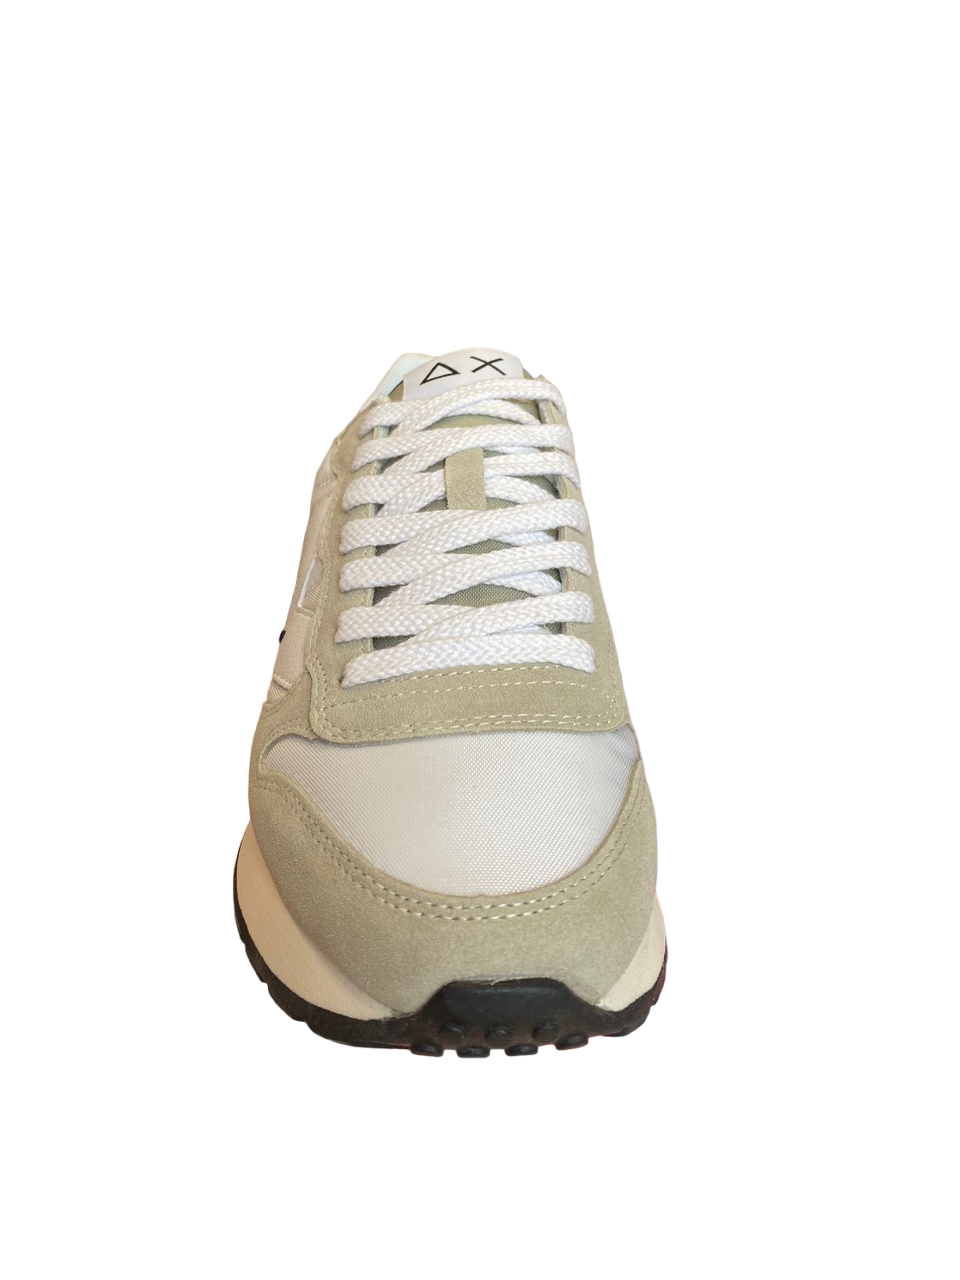 Sun68 sneakers da uomo Jaki Solid Z33111 07 bianco